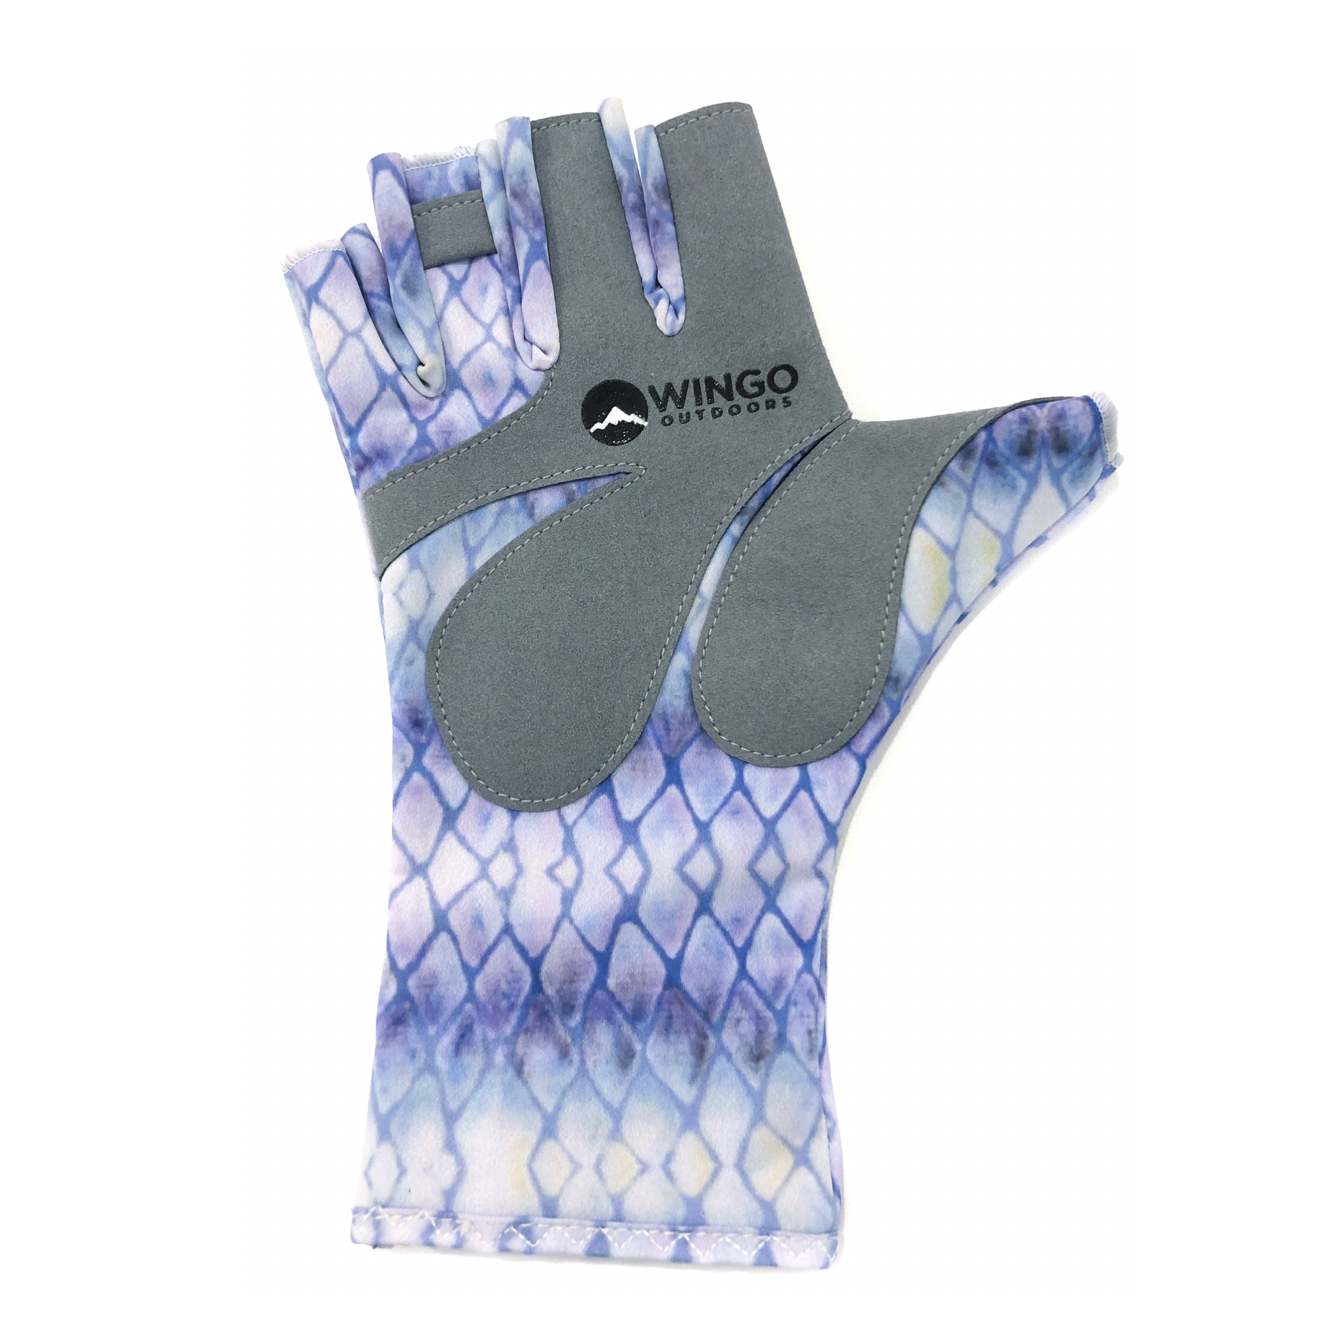 Wingo Gloves